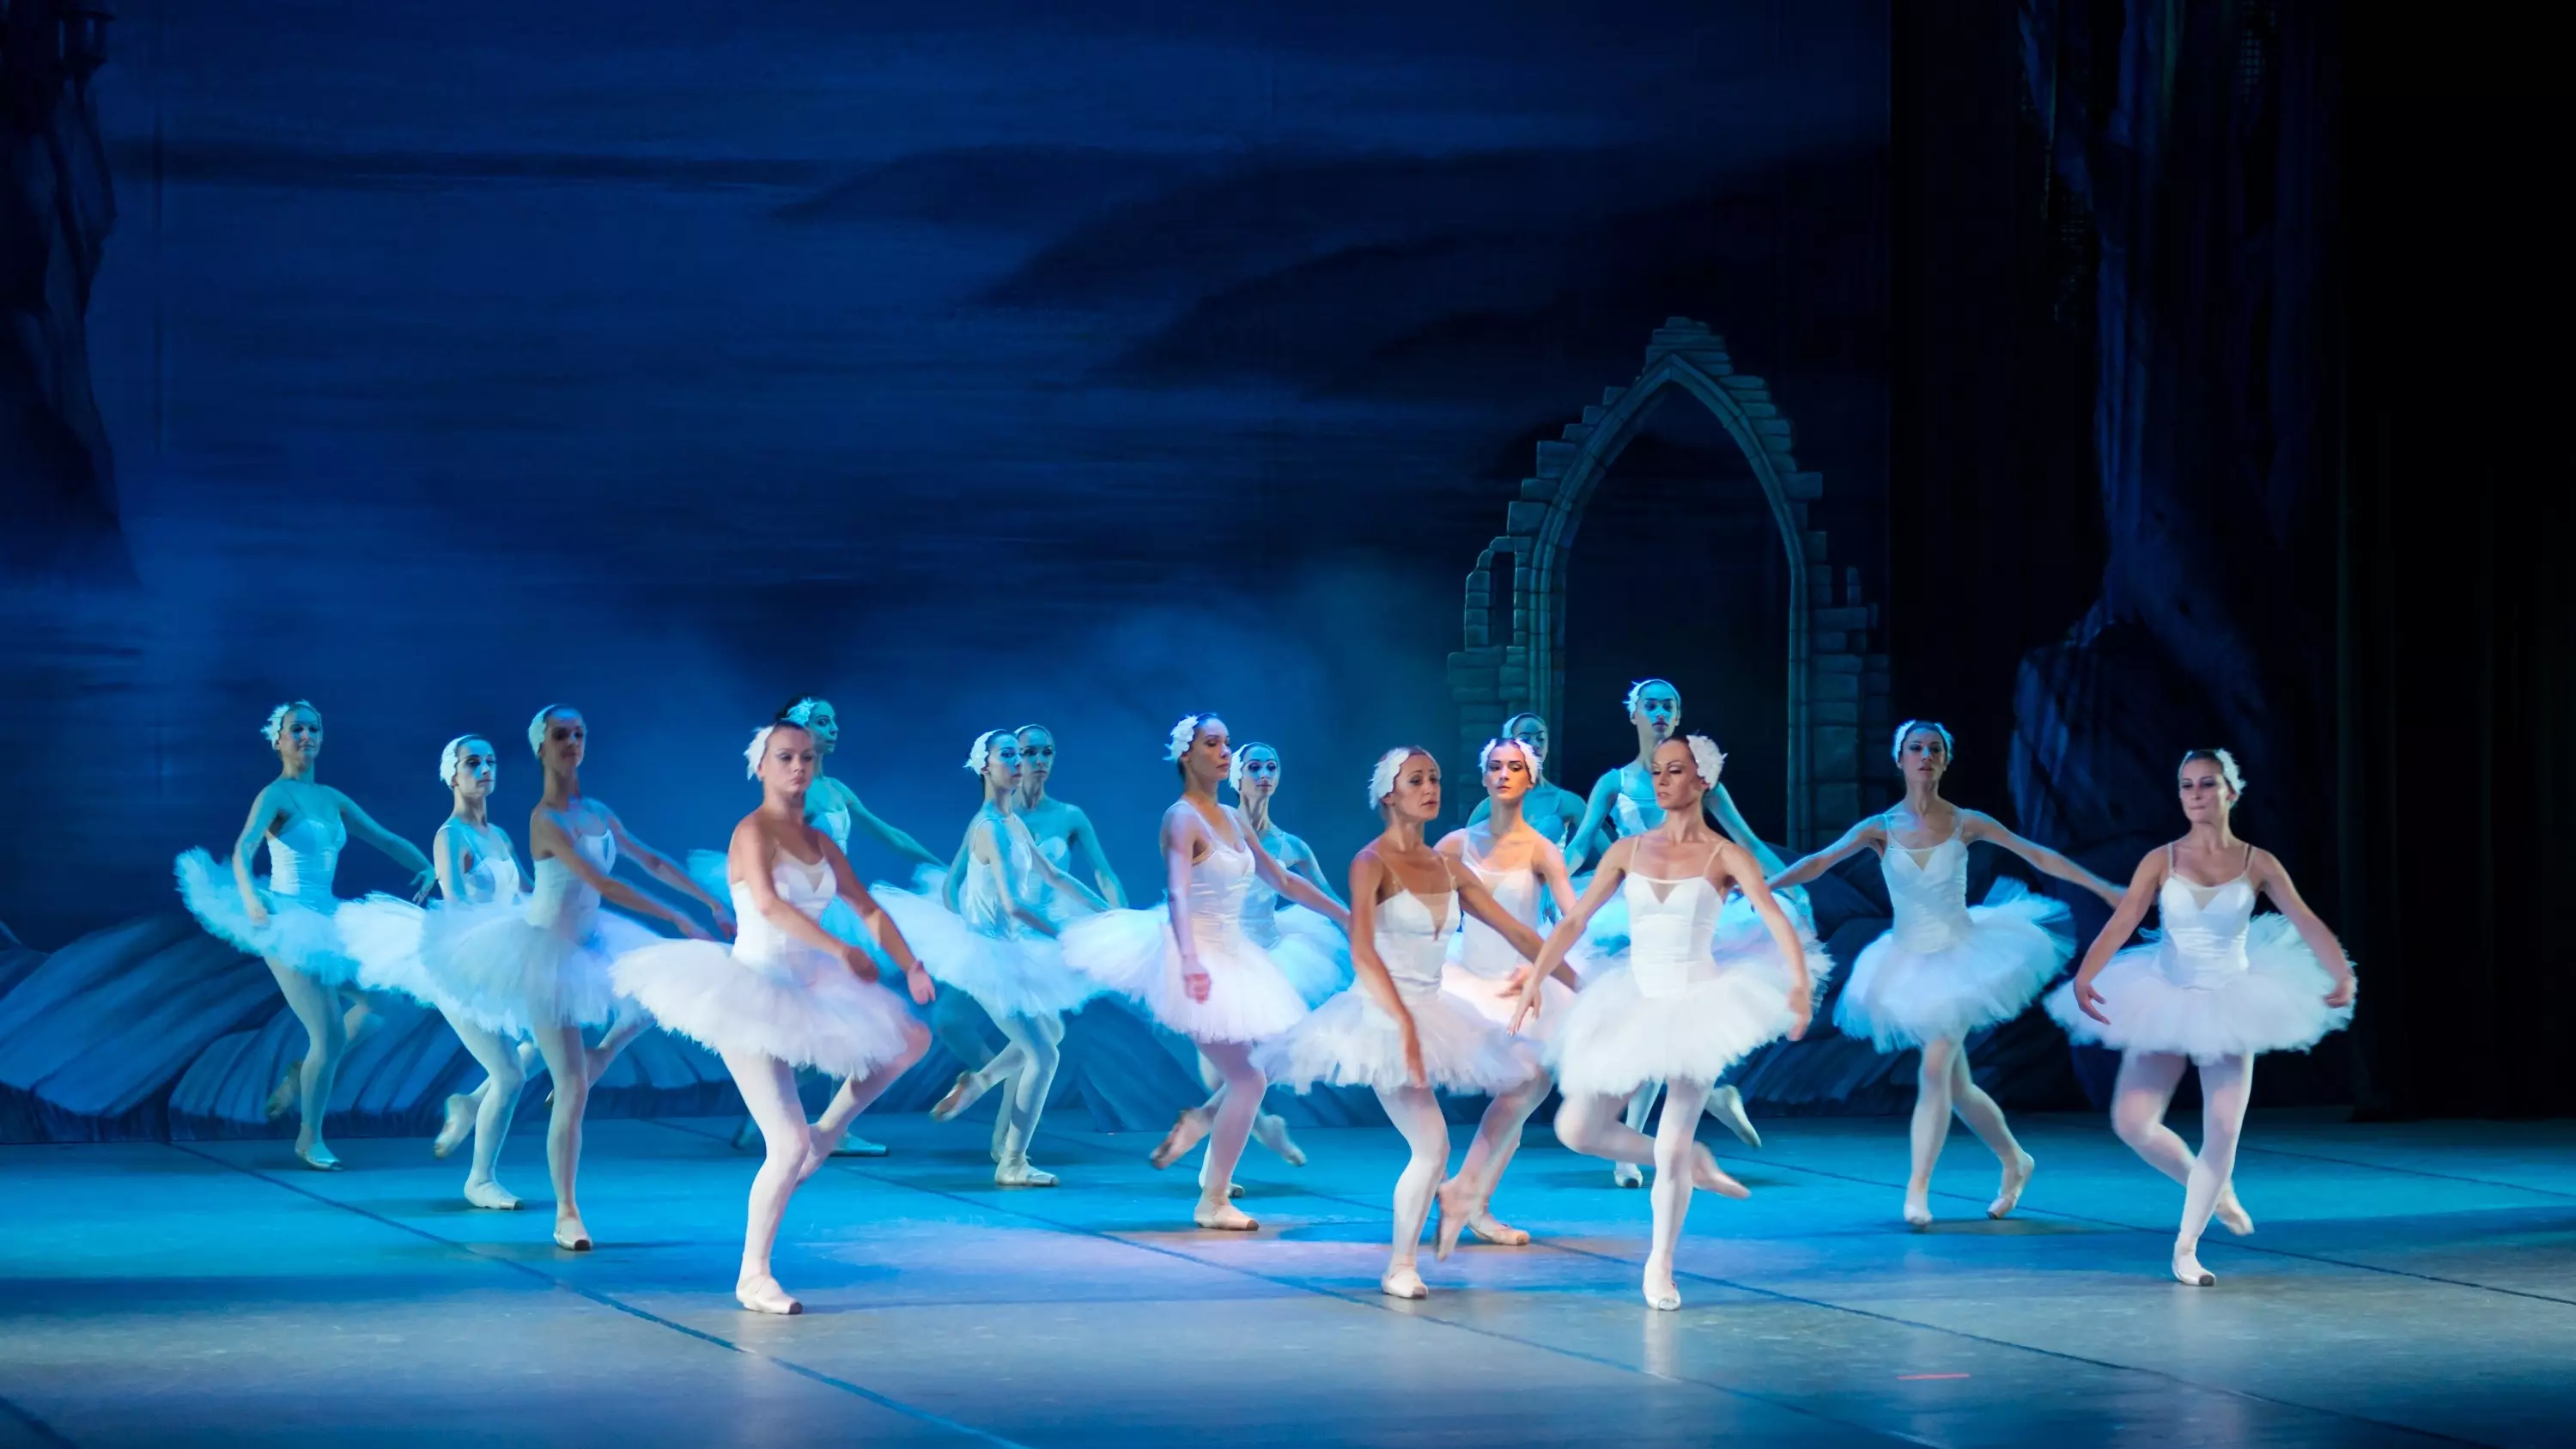 В конце недели, 7 апреля, в ДК «Ростсельмаш» пройдет балет Лебединое озеро